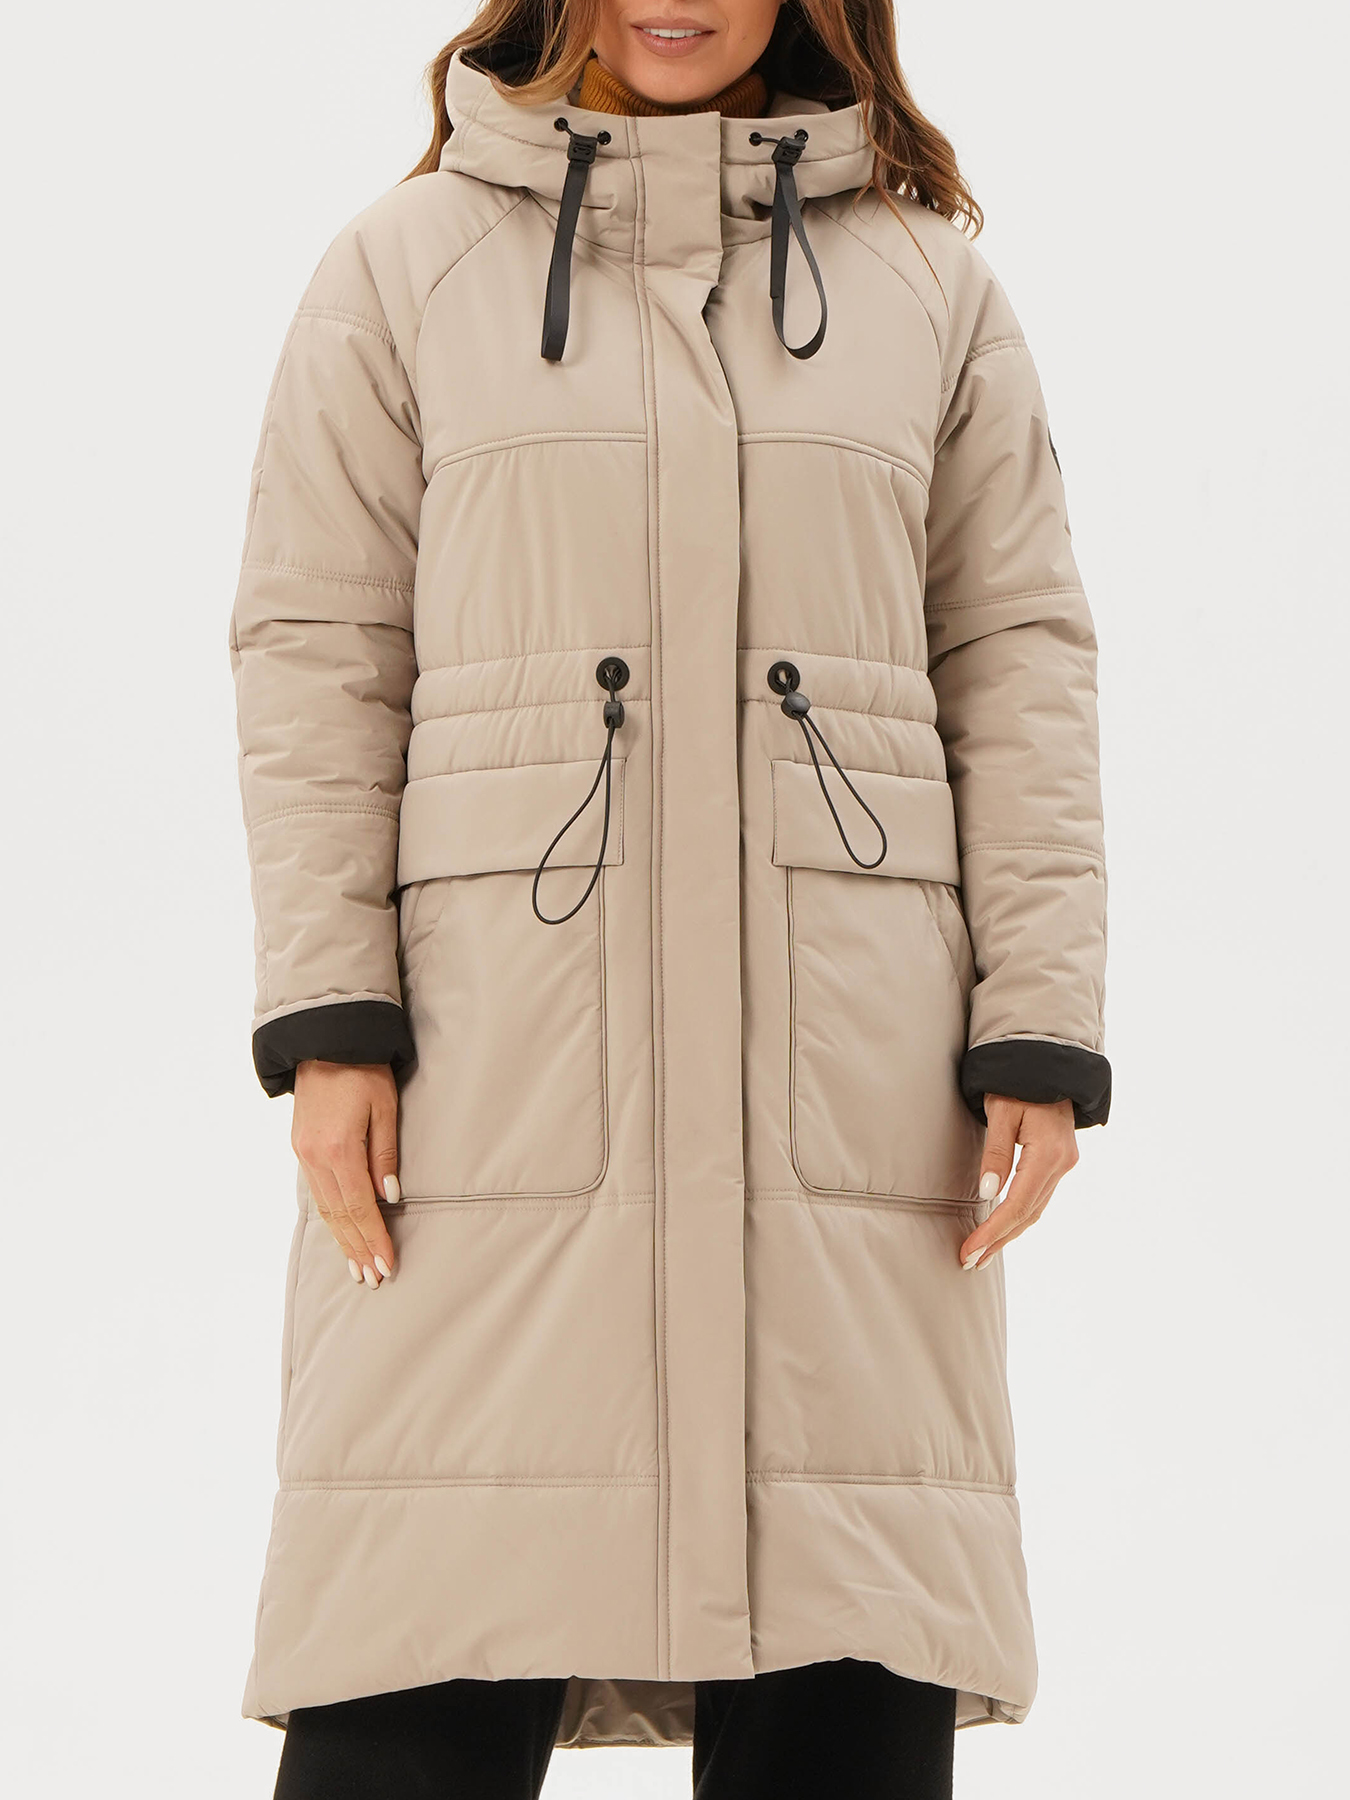 Пальто зимнее Maritta 433564-022, цвет бежевый, размер 48